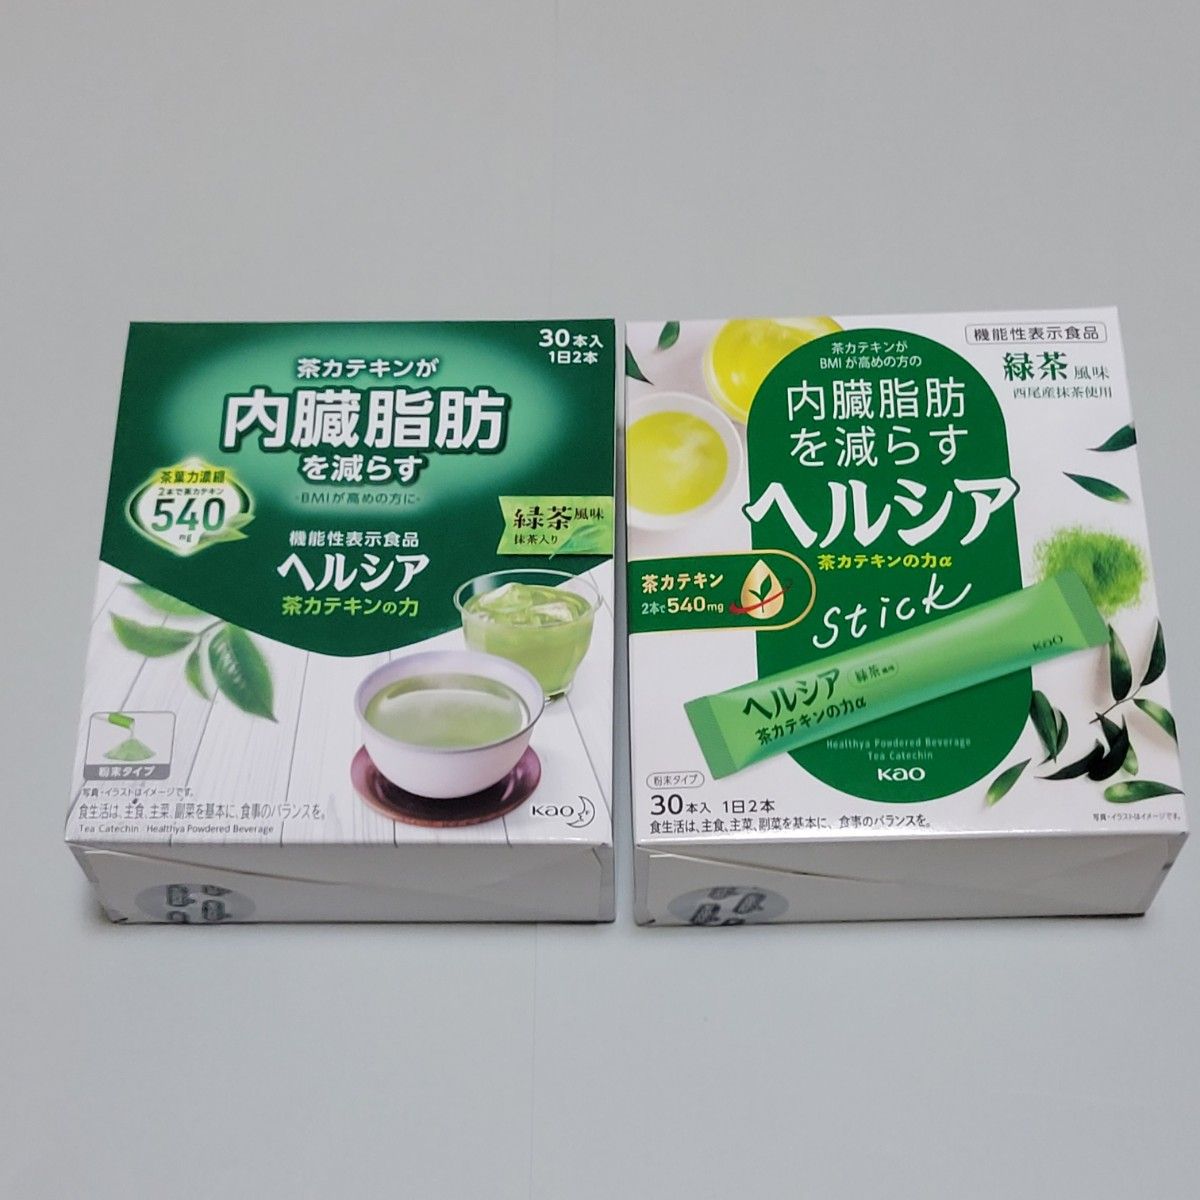 ヘルシア 機能性表示食品 2種類 緑茶 茶カテキンの力 内臓脂肪を減らす 粉末